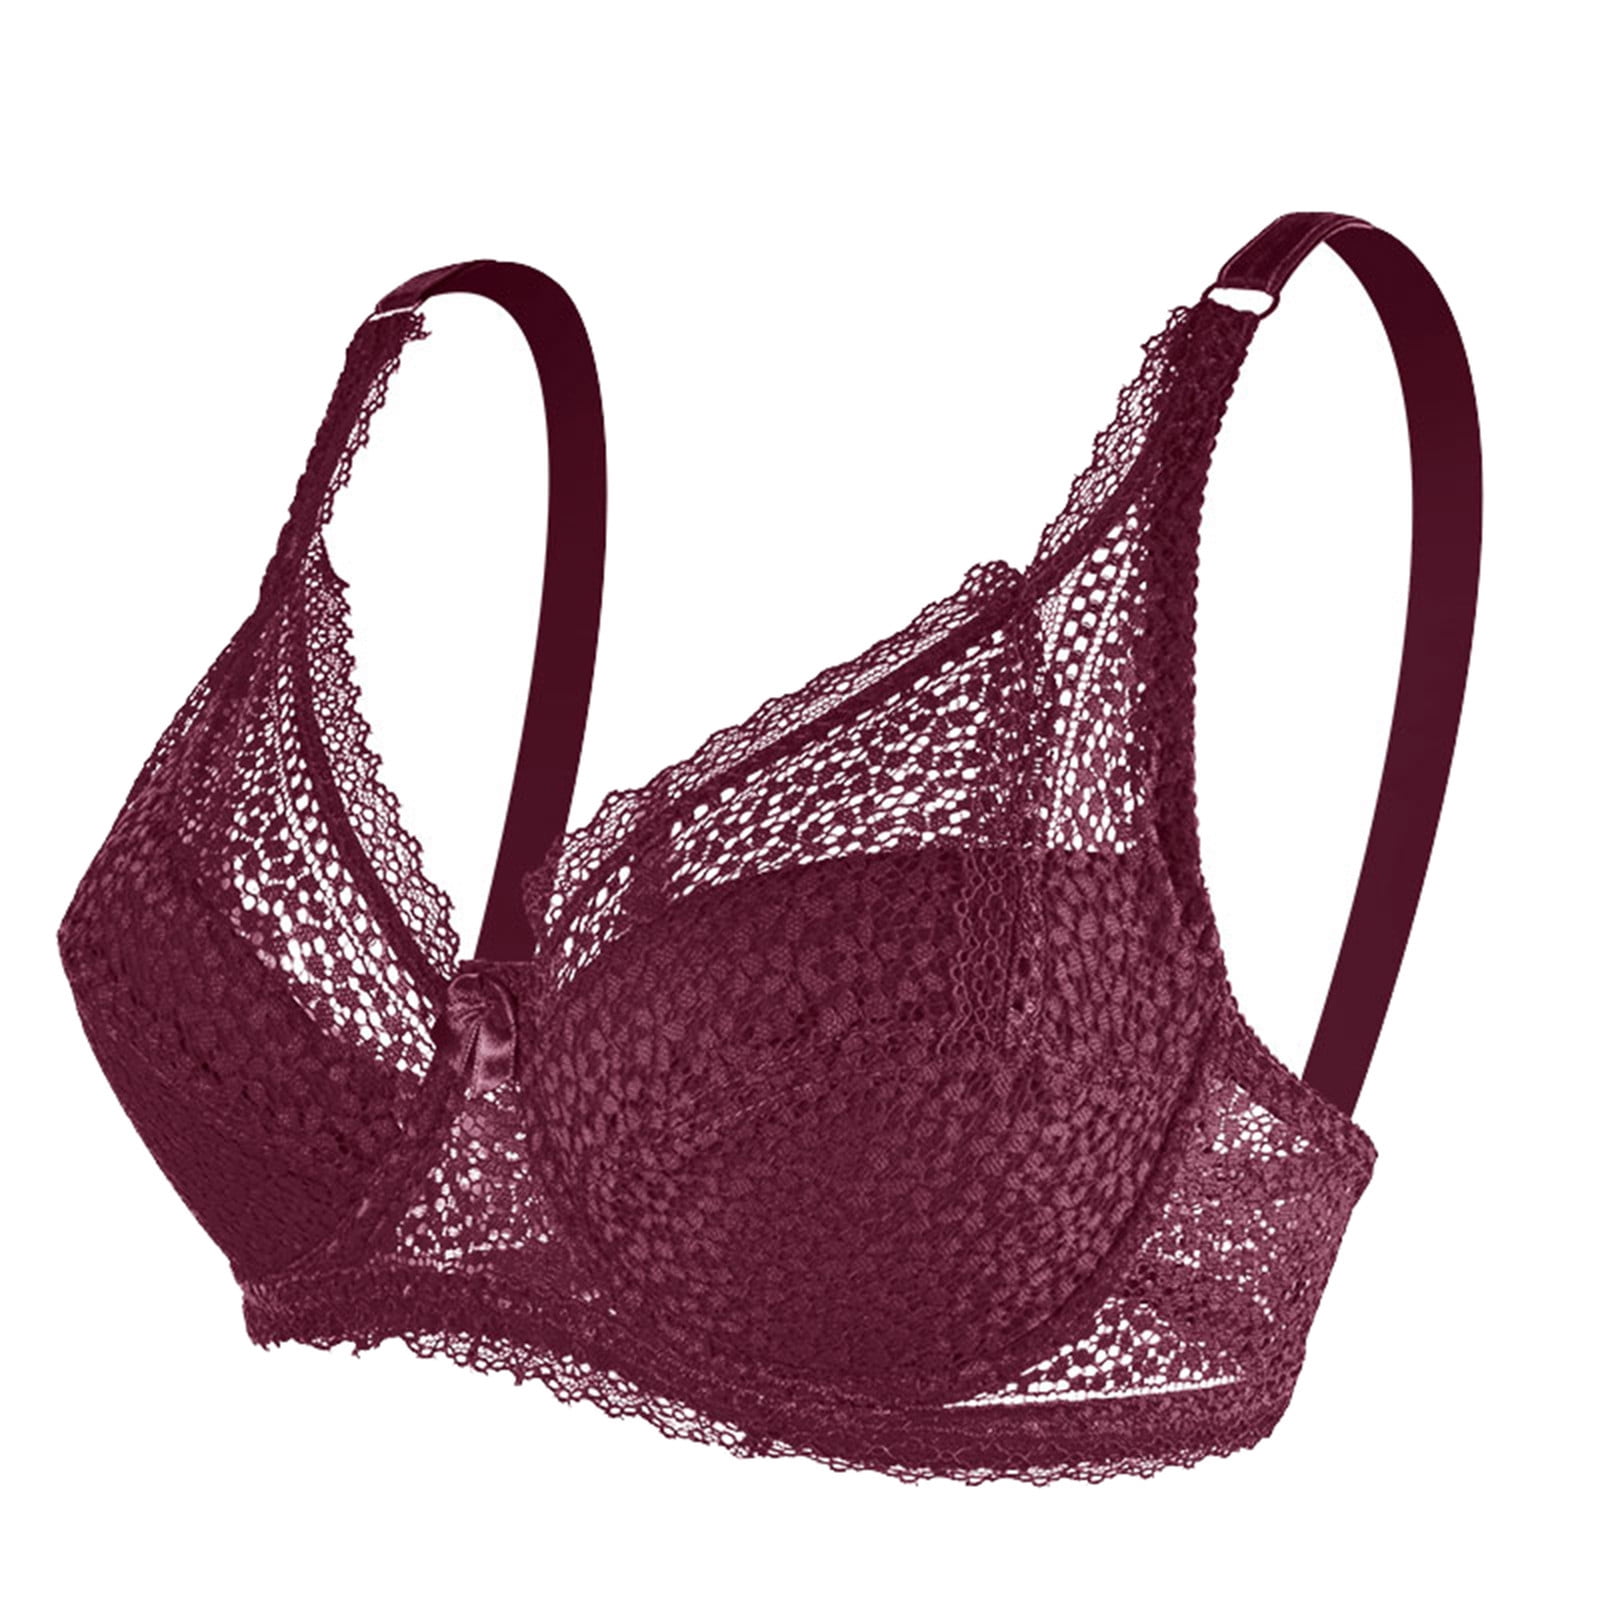 MRULIC bras for women Womens Underwire Bra Lace Floral Bra Unlined